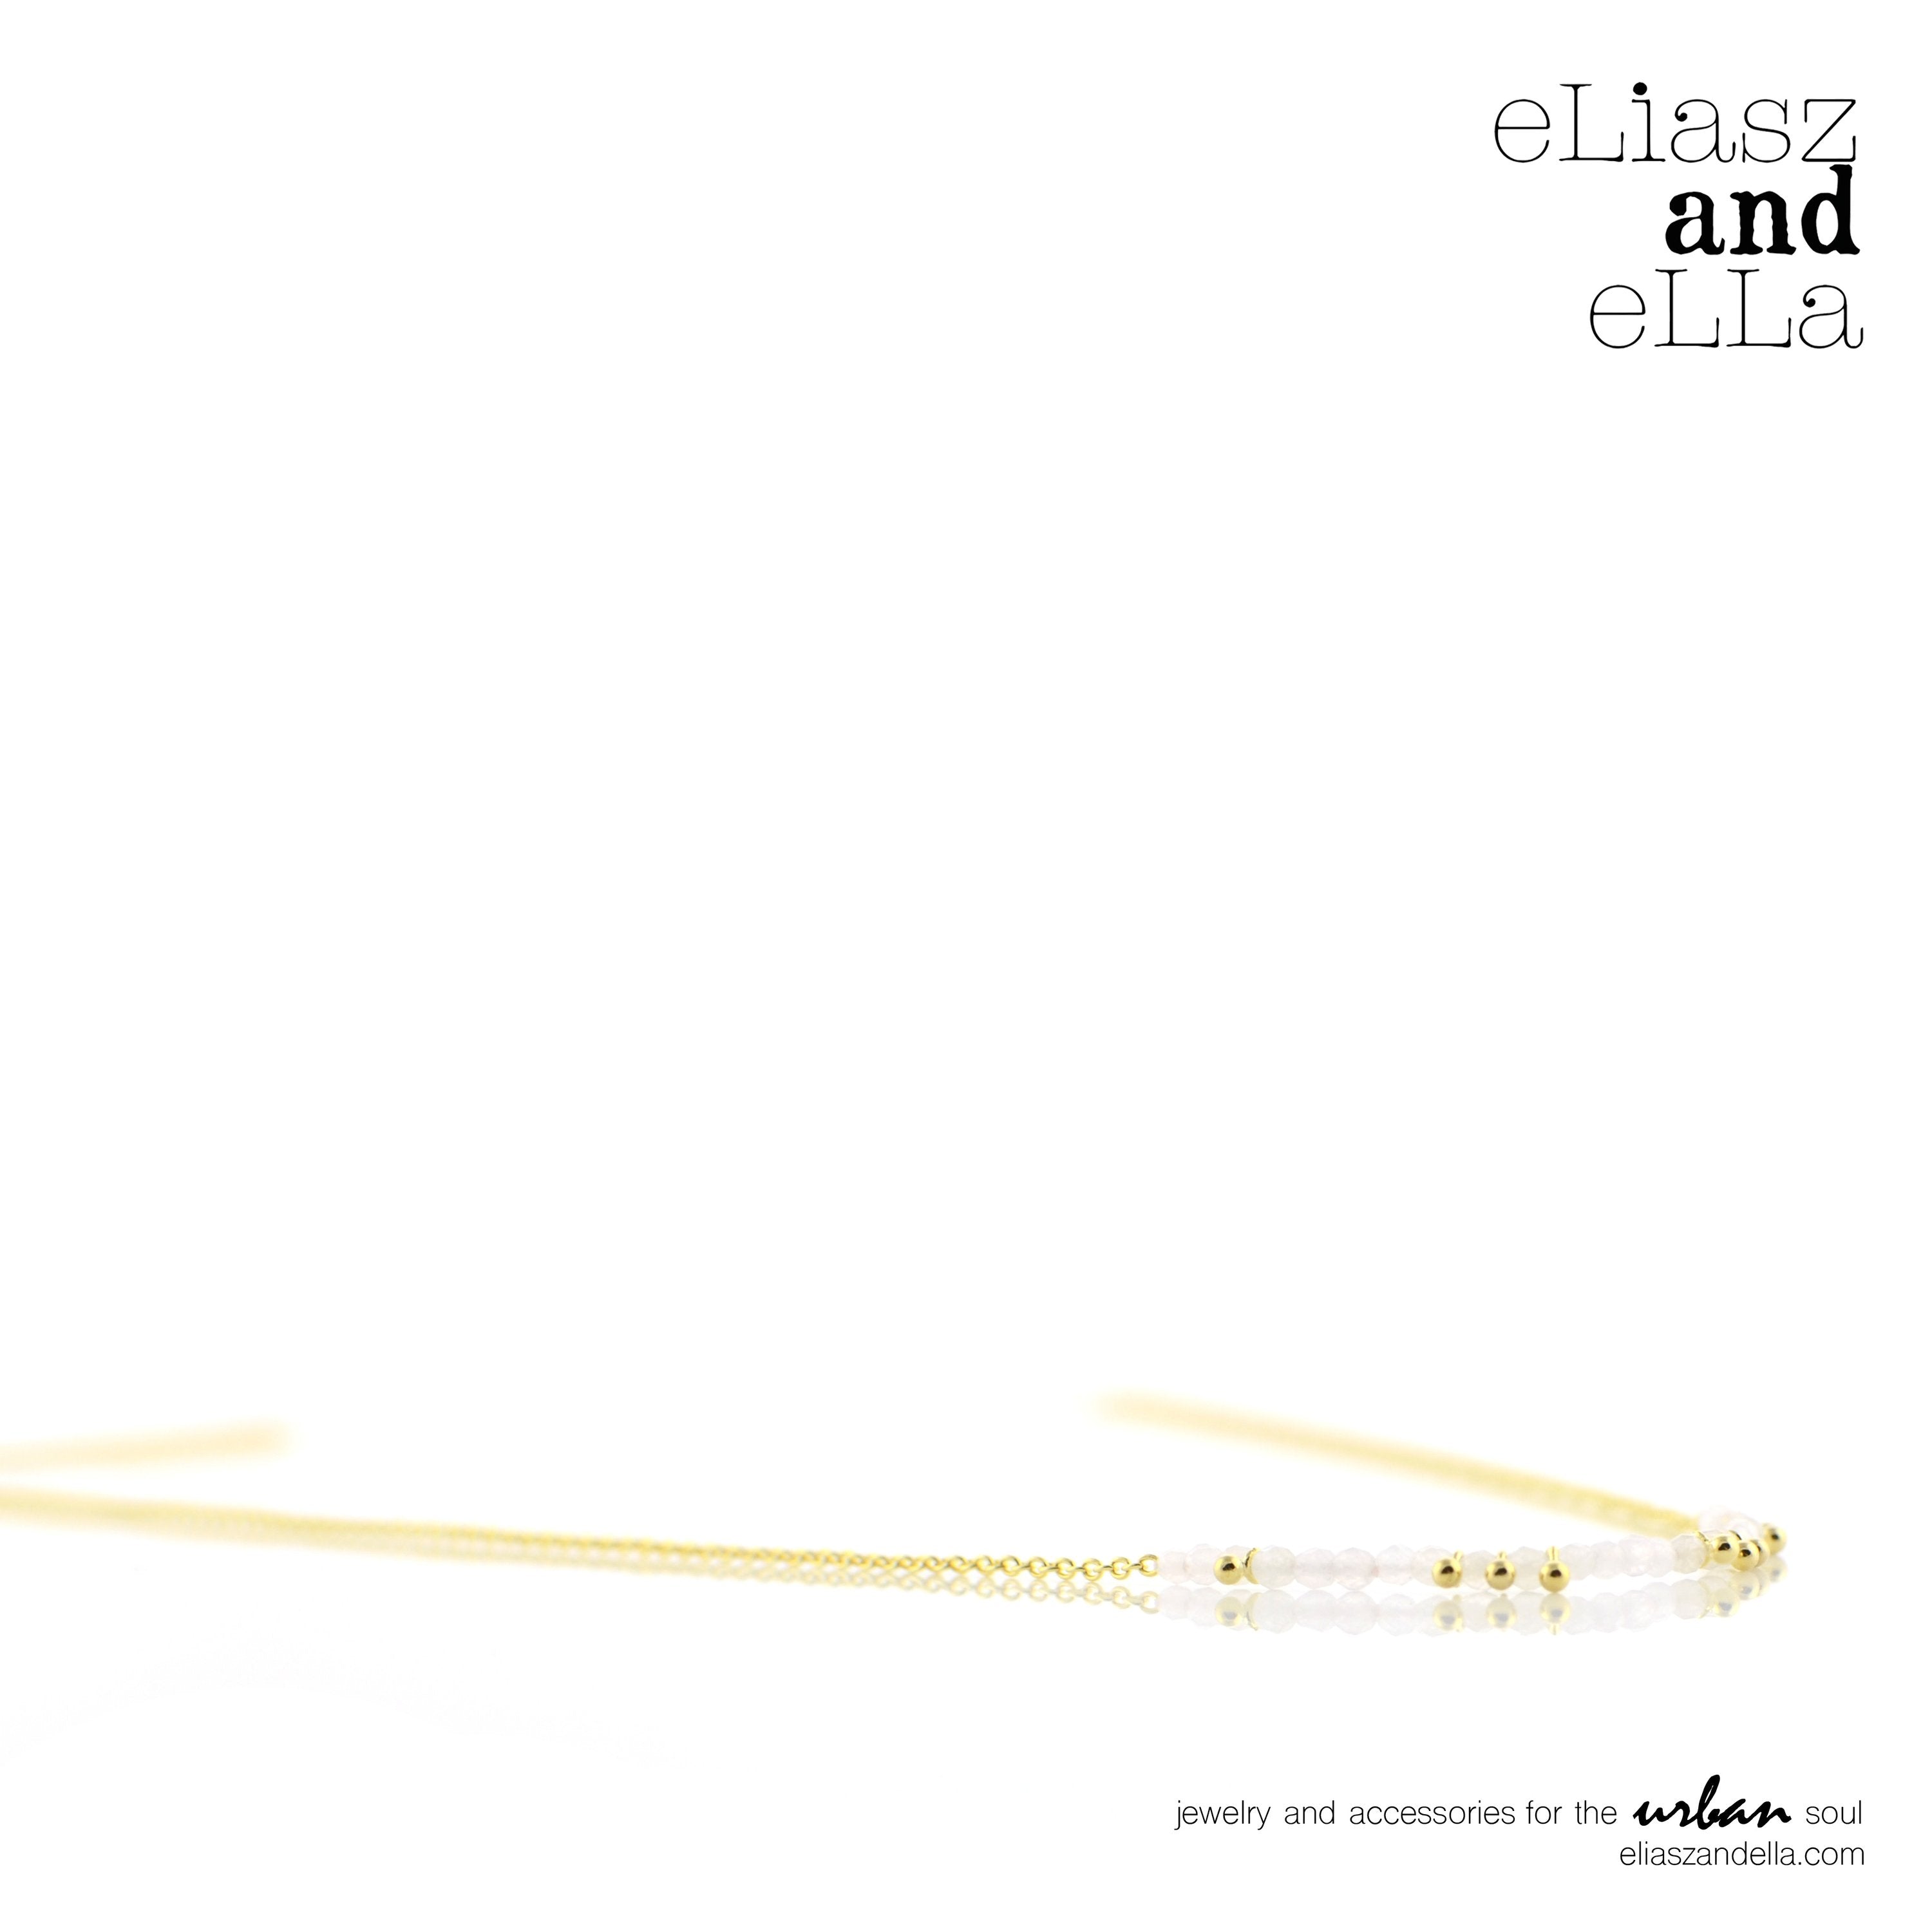 Eliasz and Ella - "Cristofori" Necklace